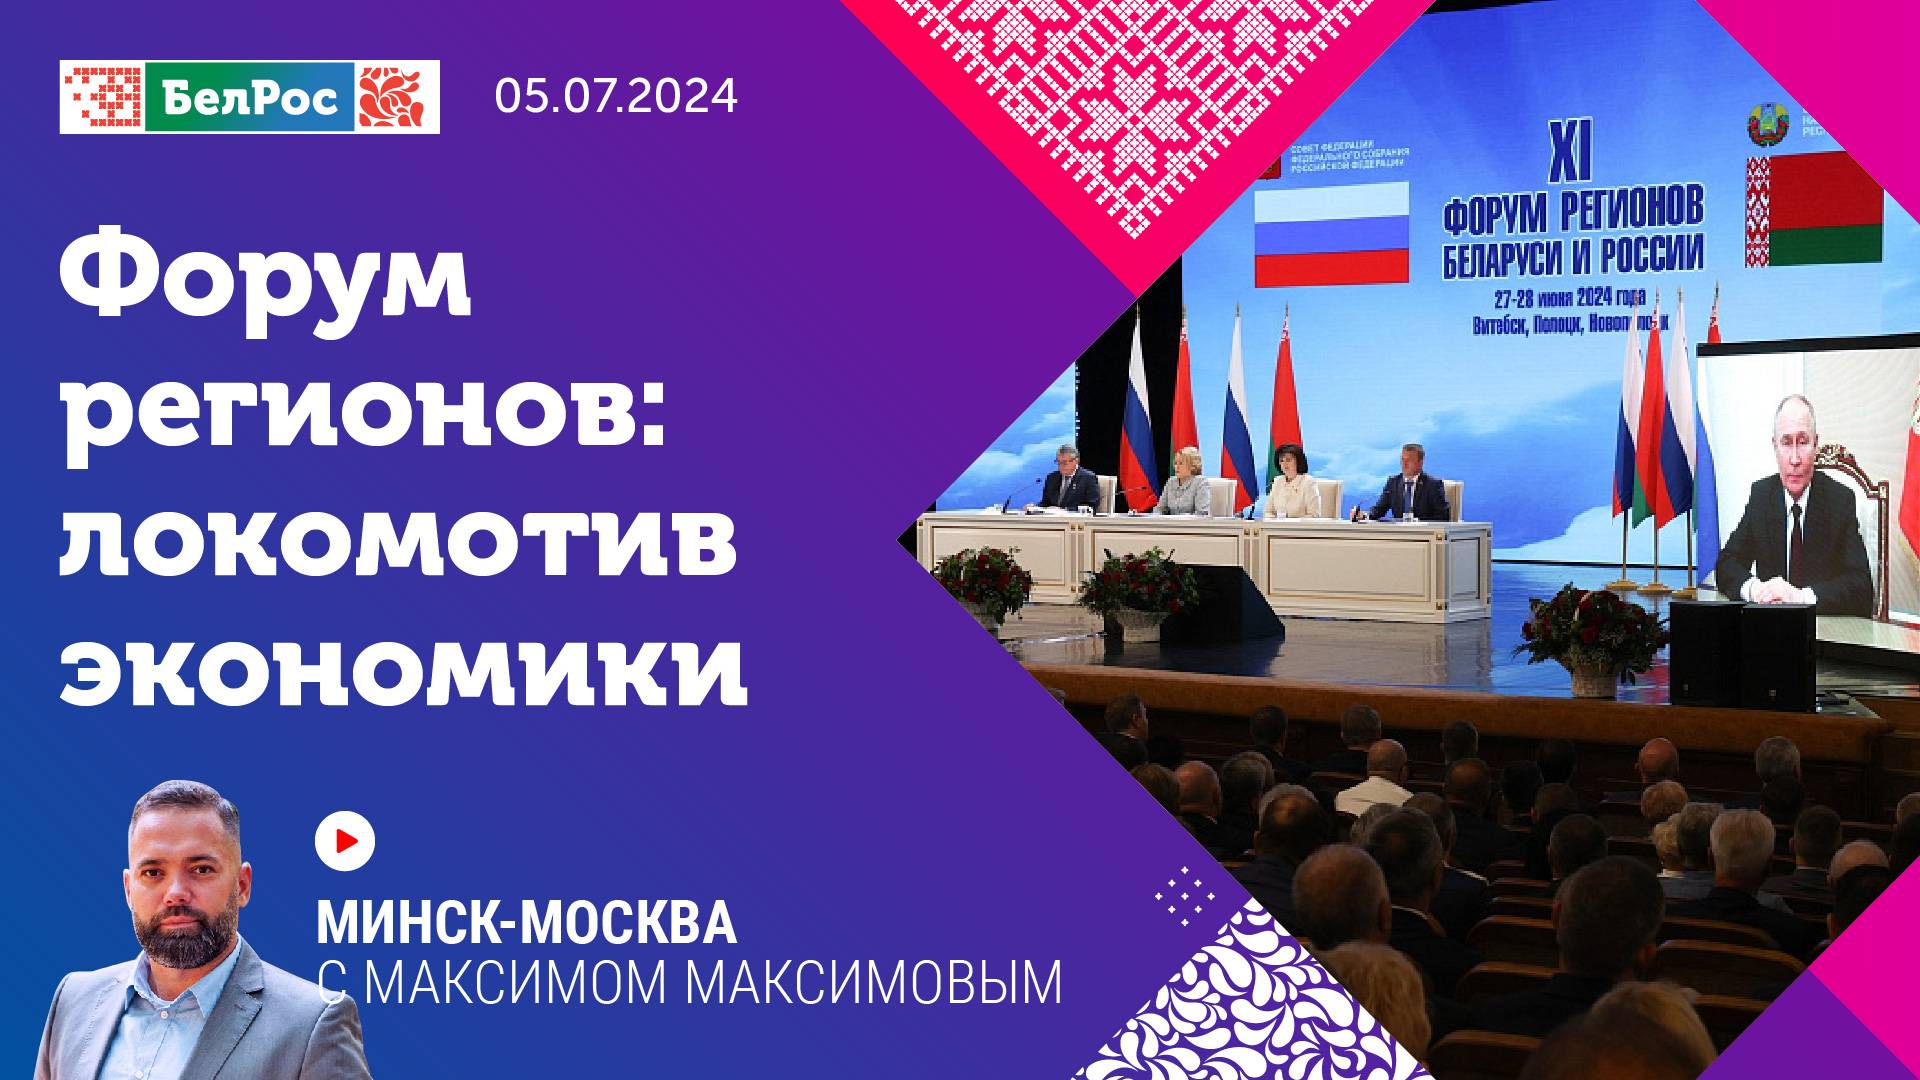 Минск - Москва | Форум регионов: локомотив экономики